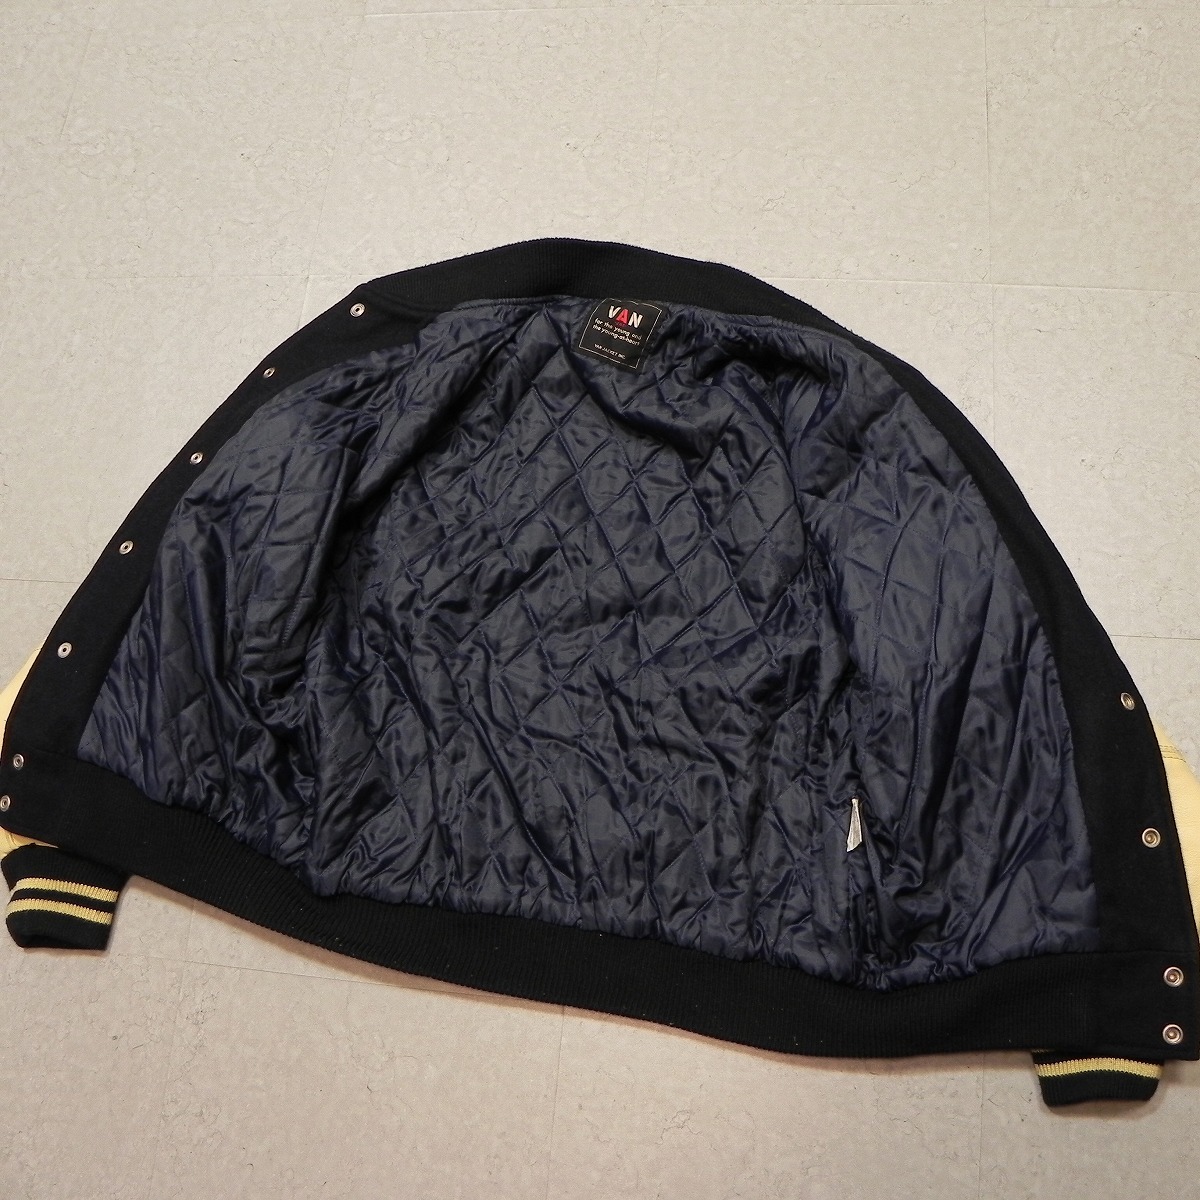  редкий подлинная вещь [VAN JAC] Van ja Kett рукав кожа куртка L б/у одежда VAN Guards Vintage Showa Retro джемпер блузон *h